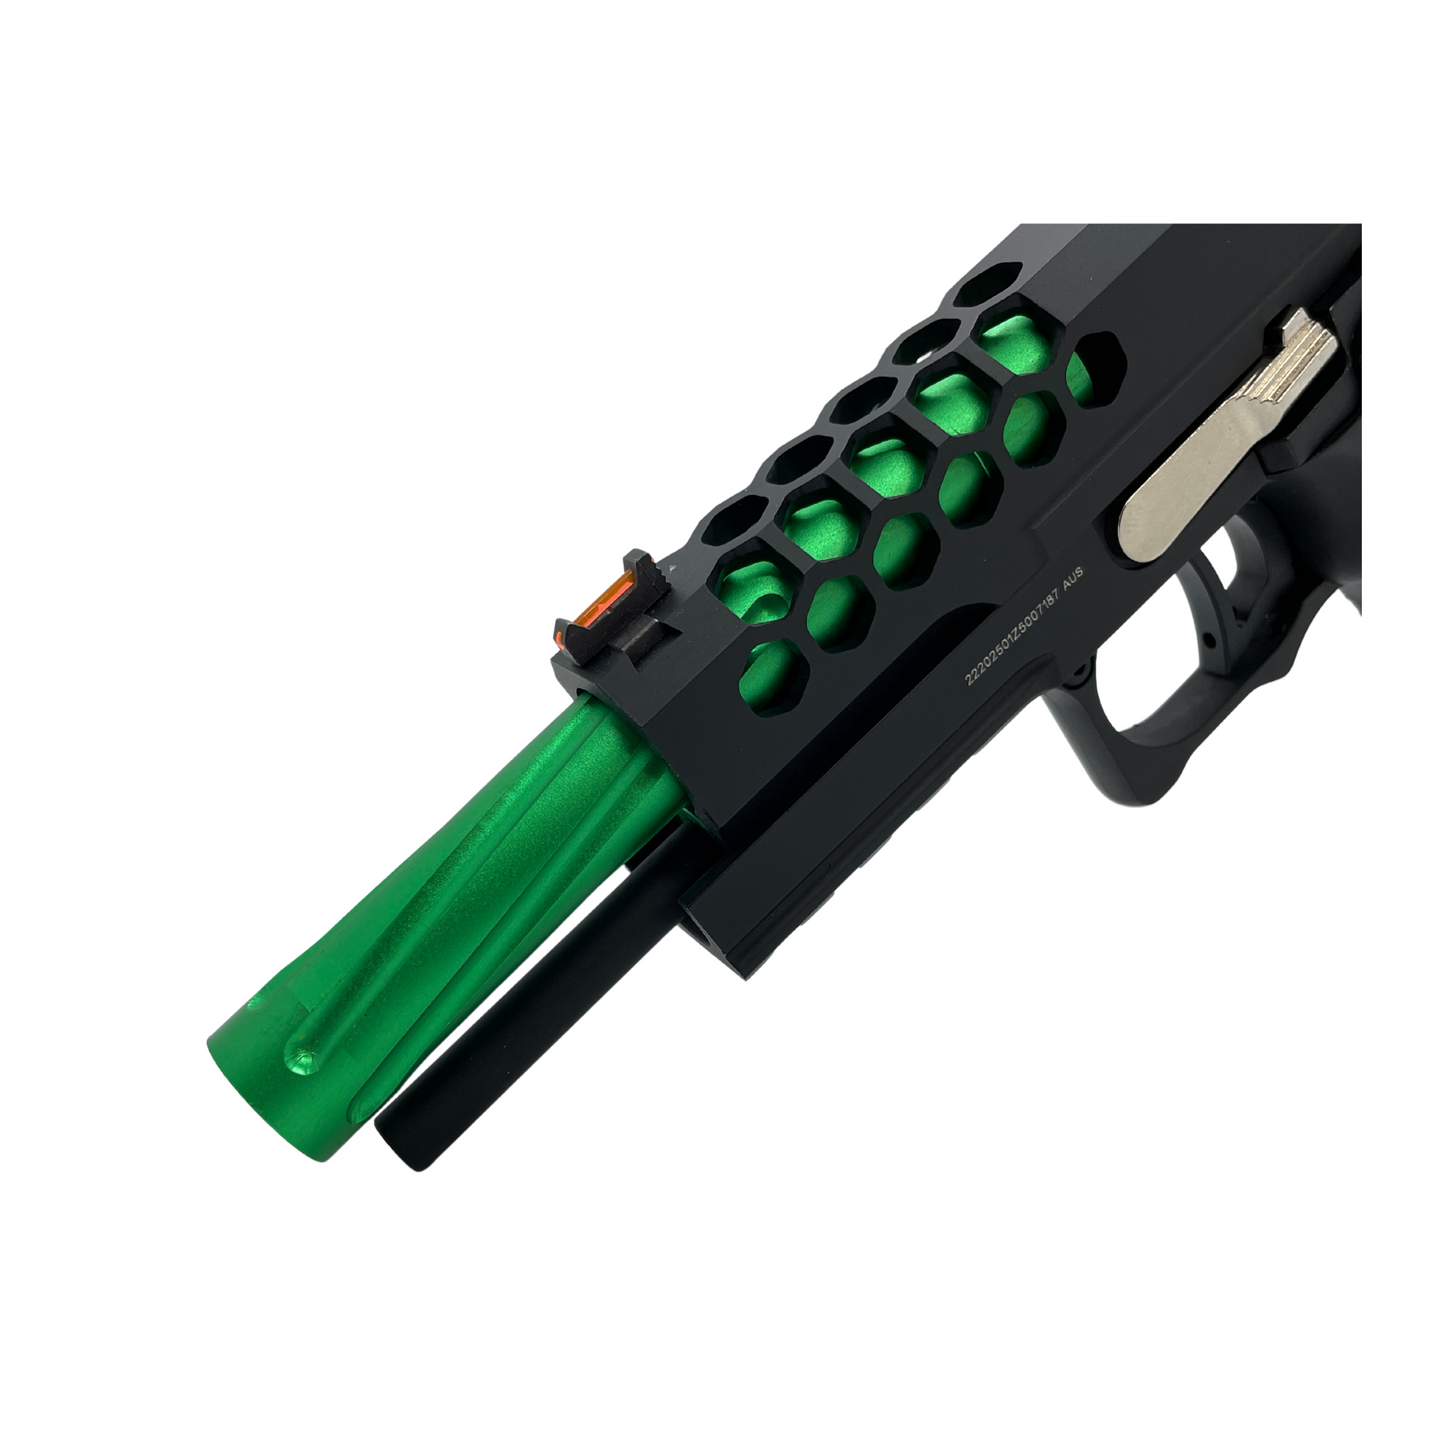 "Irish Luck" GBU Custom Hi-Capa Gas Pistol - Gel Blaster